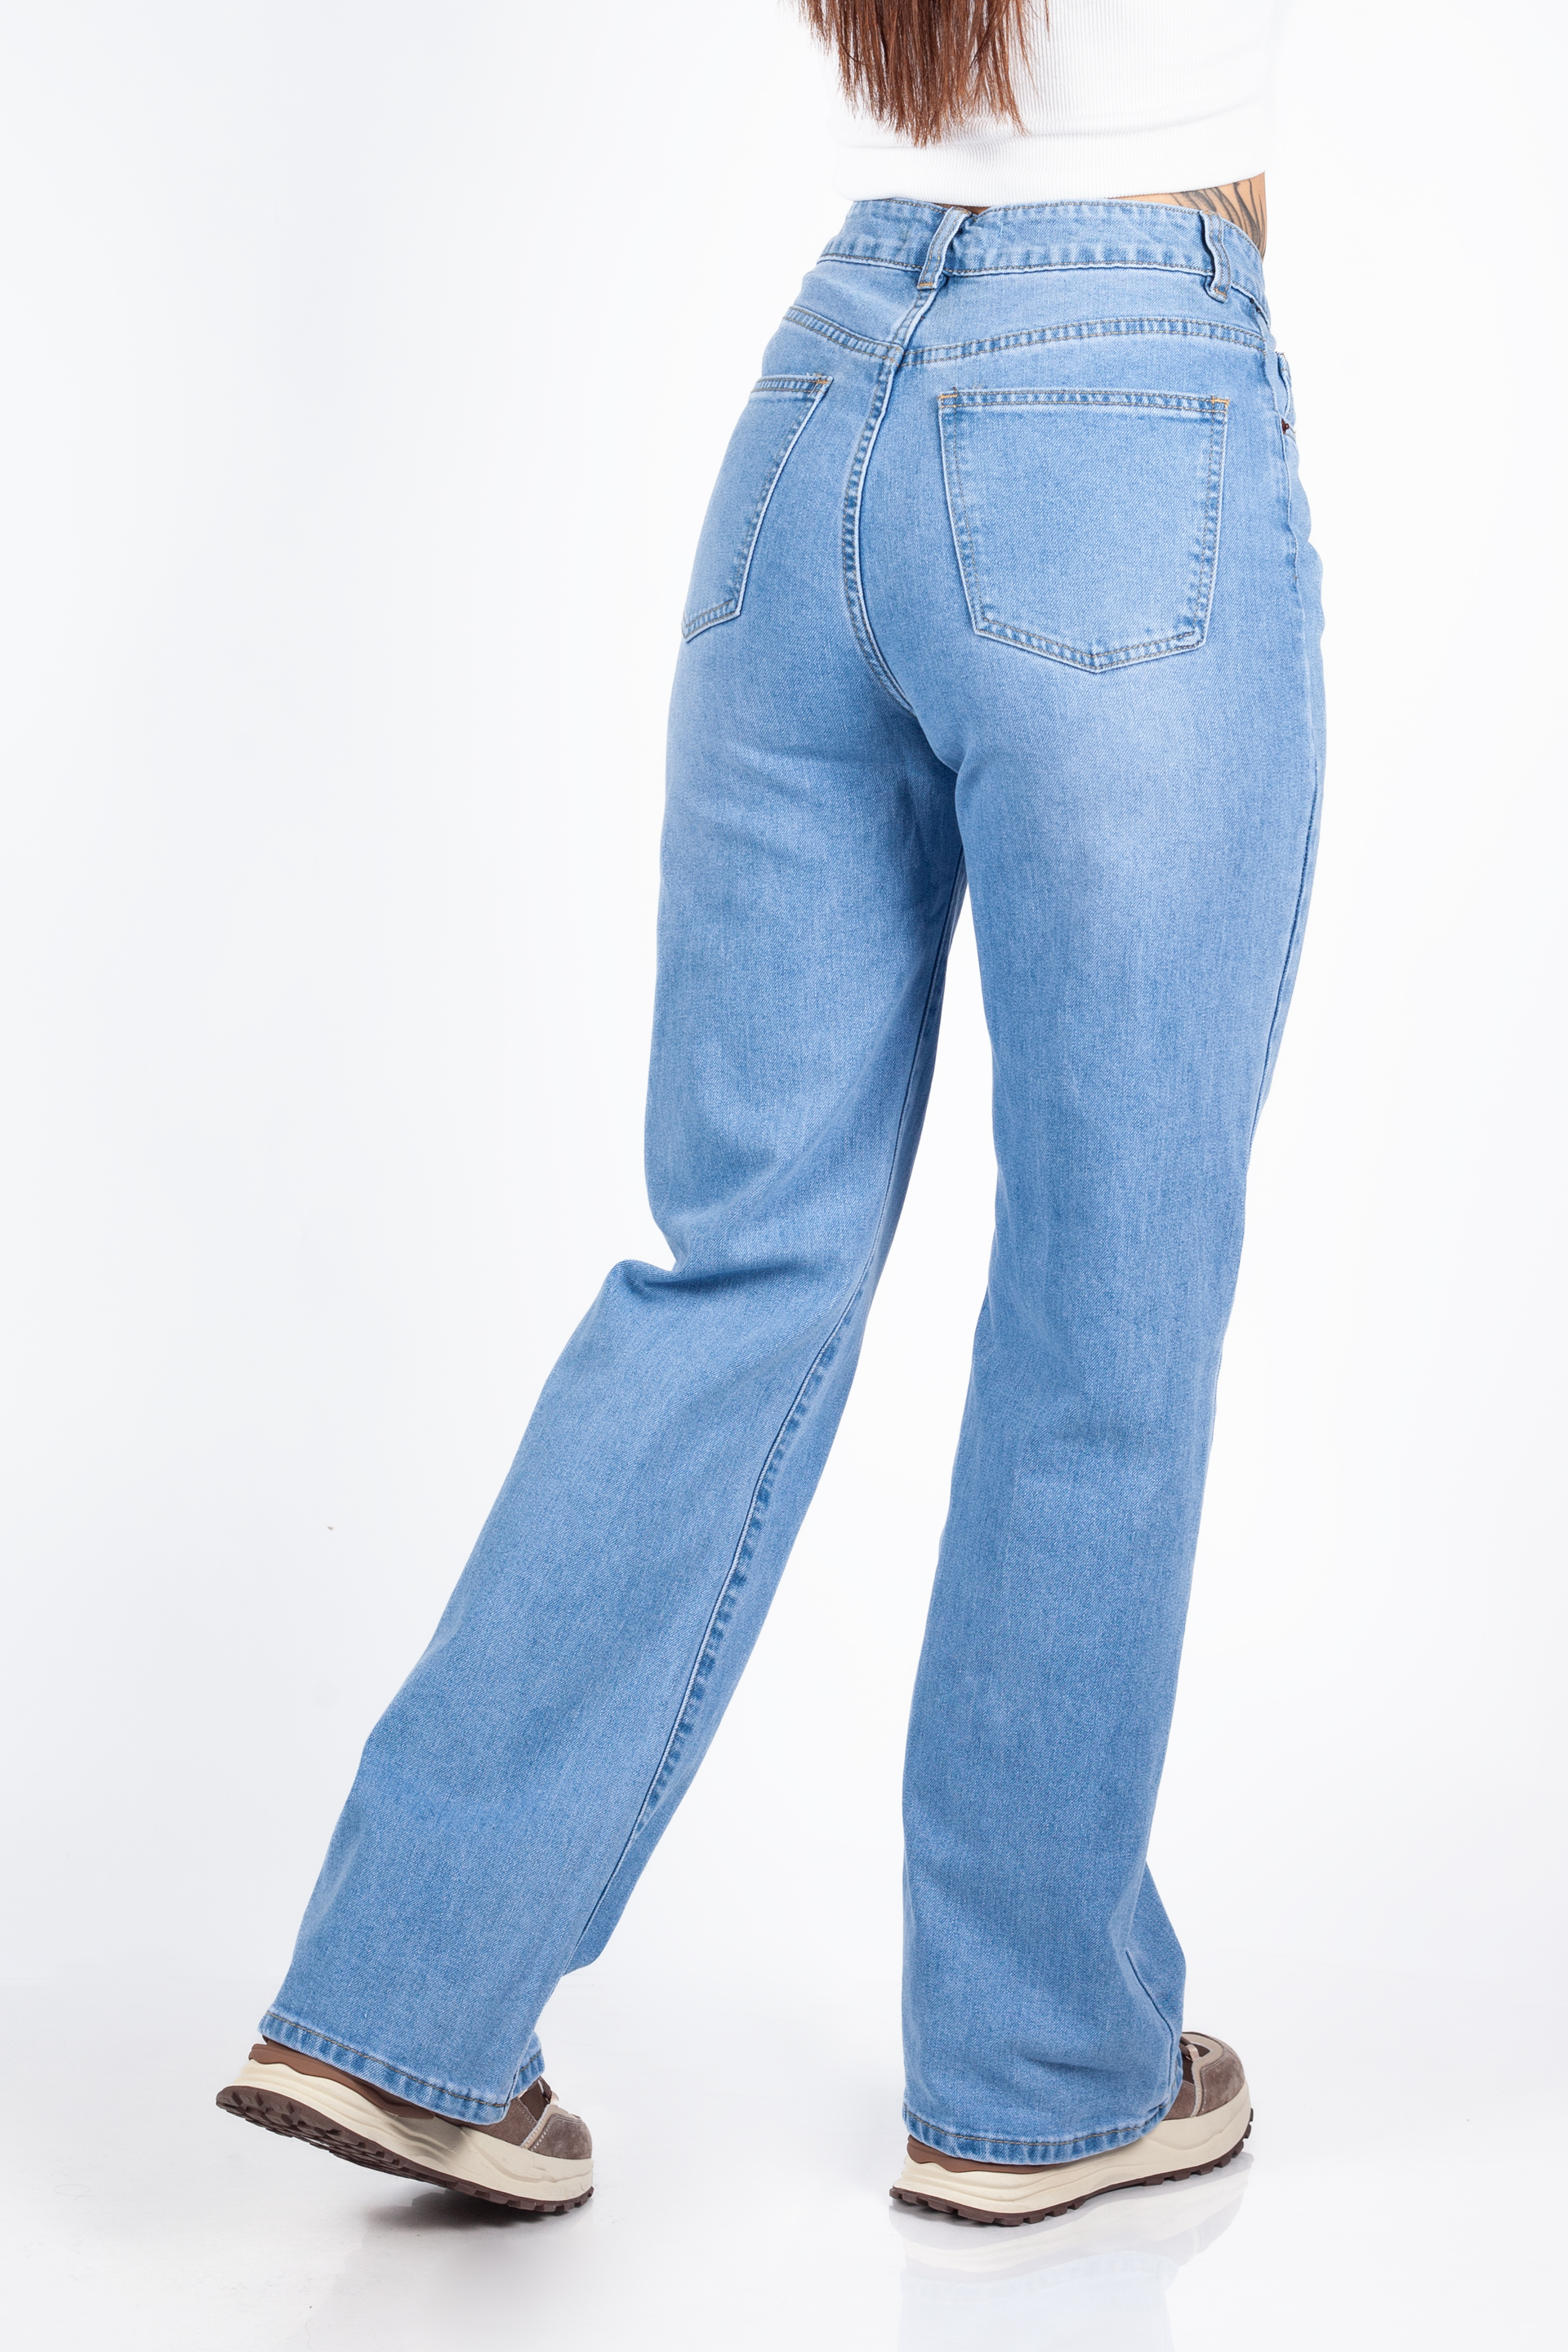 Jeans VS MISS VS8176